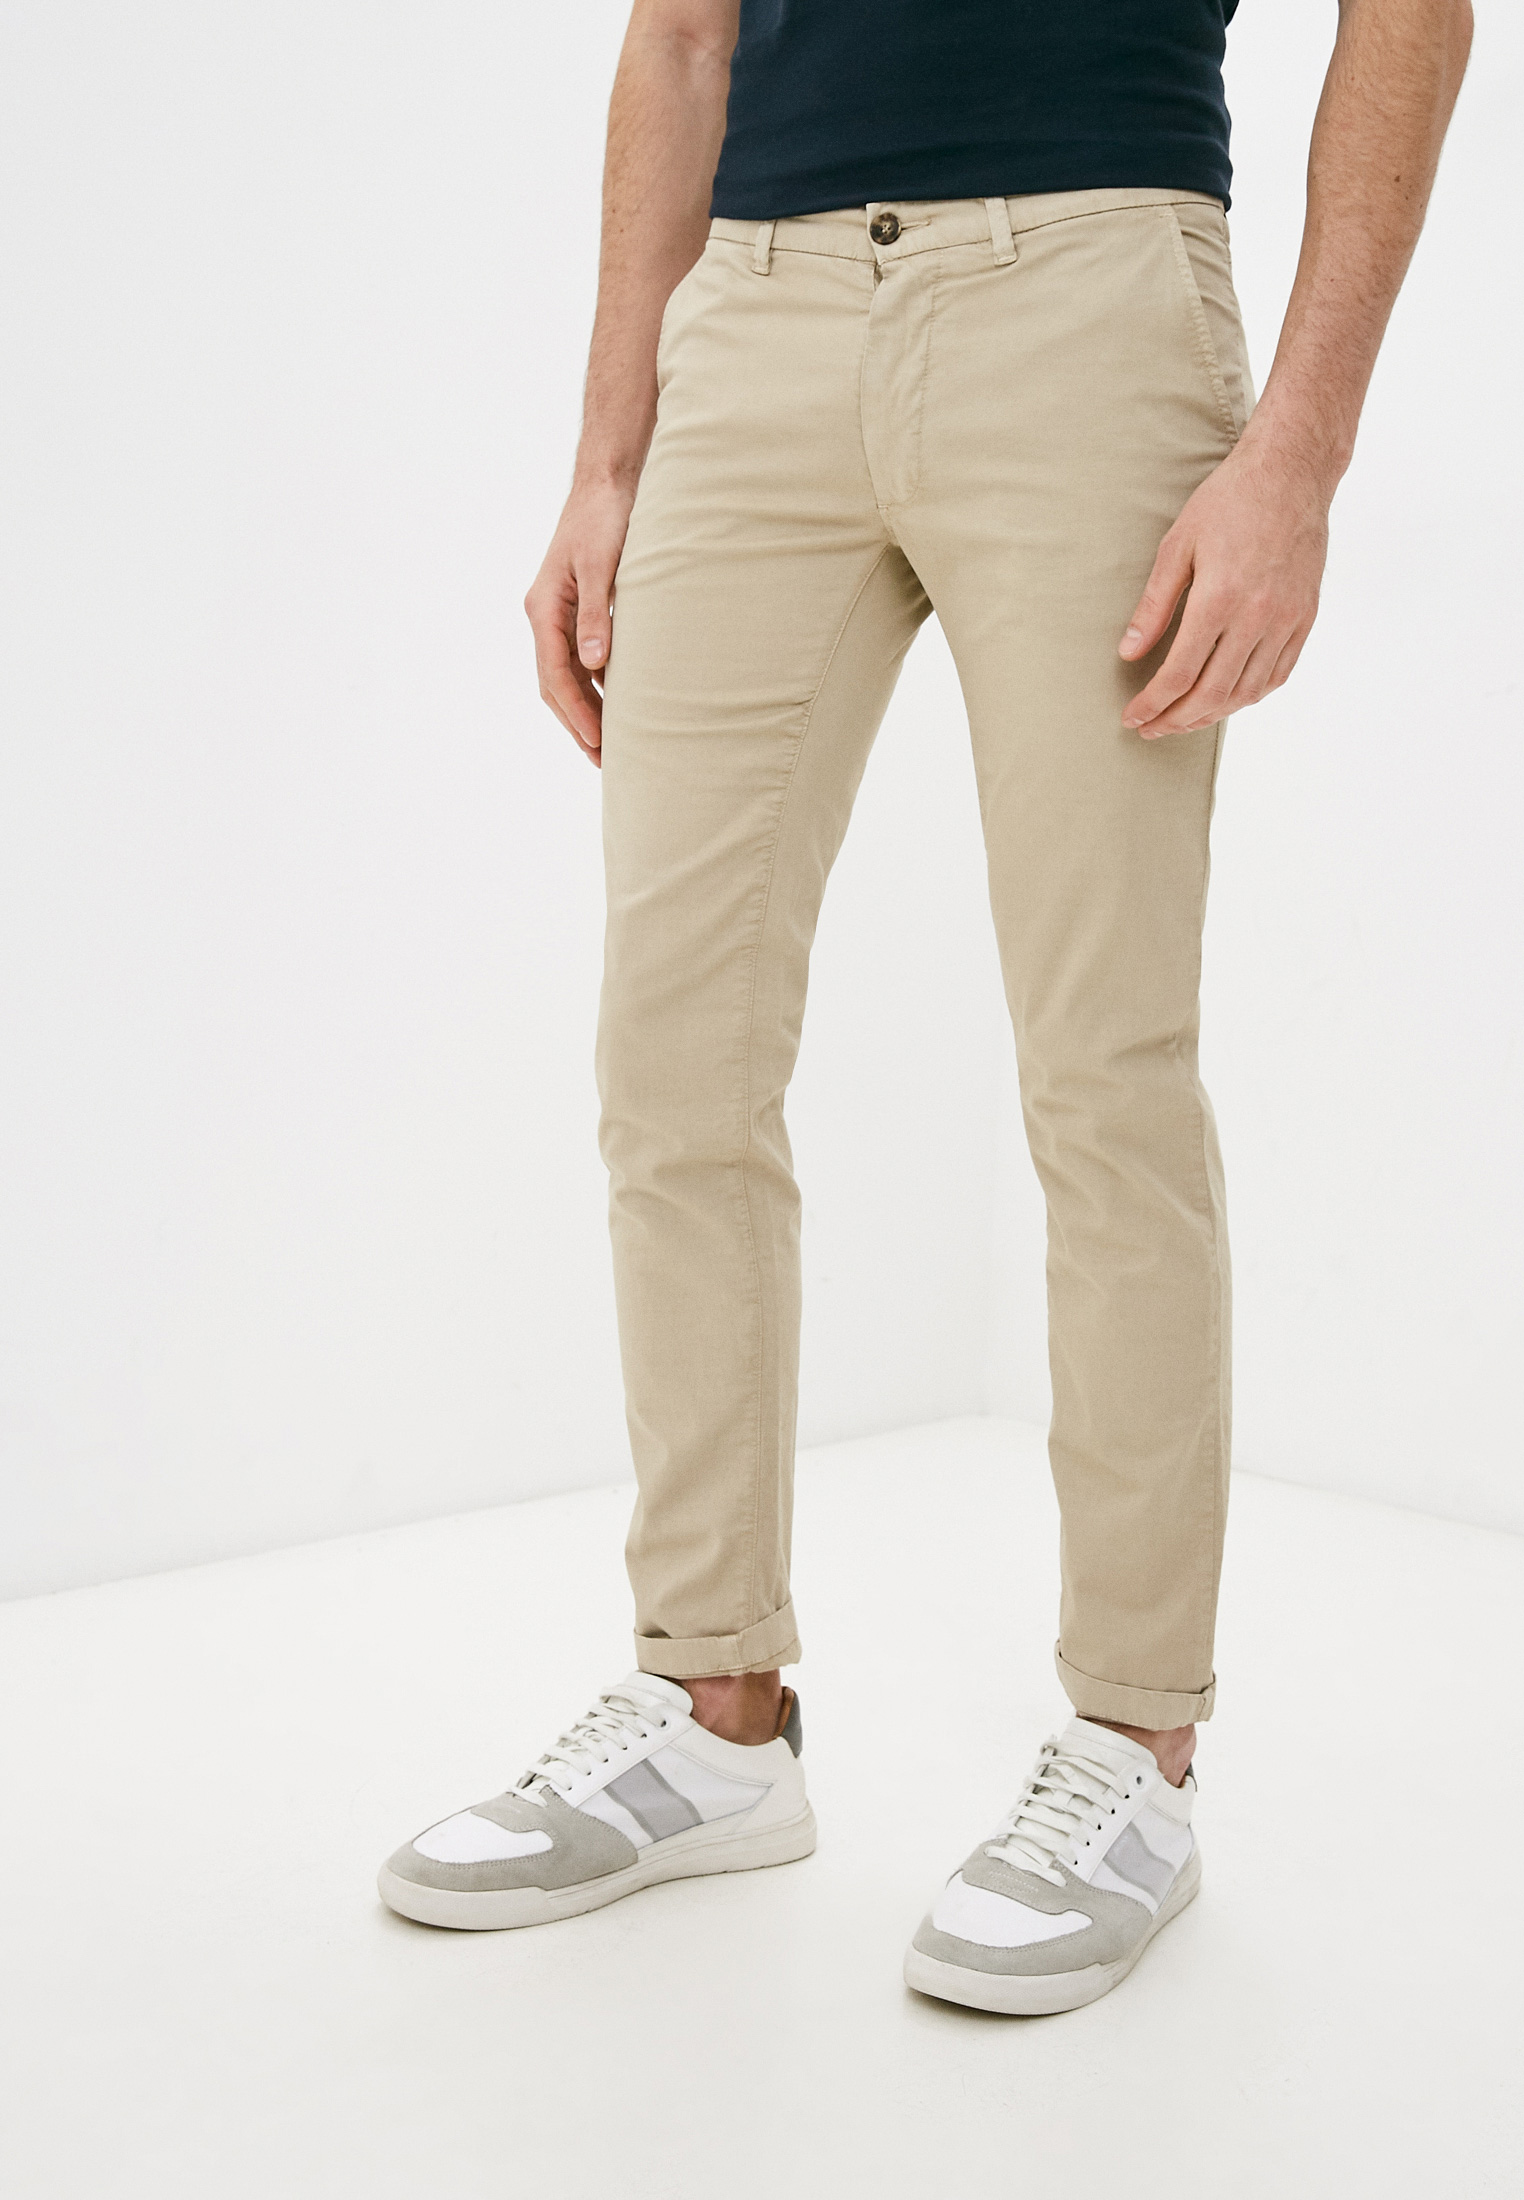 Мужские повседневные брюки Trussardi (Труссарди) 52P00008-1T002361-H-001: изображение 6